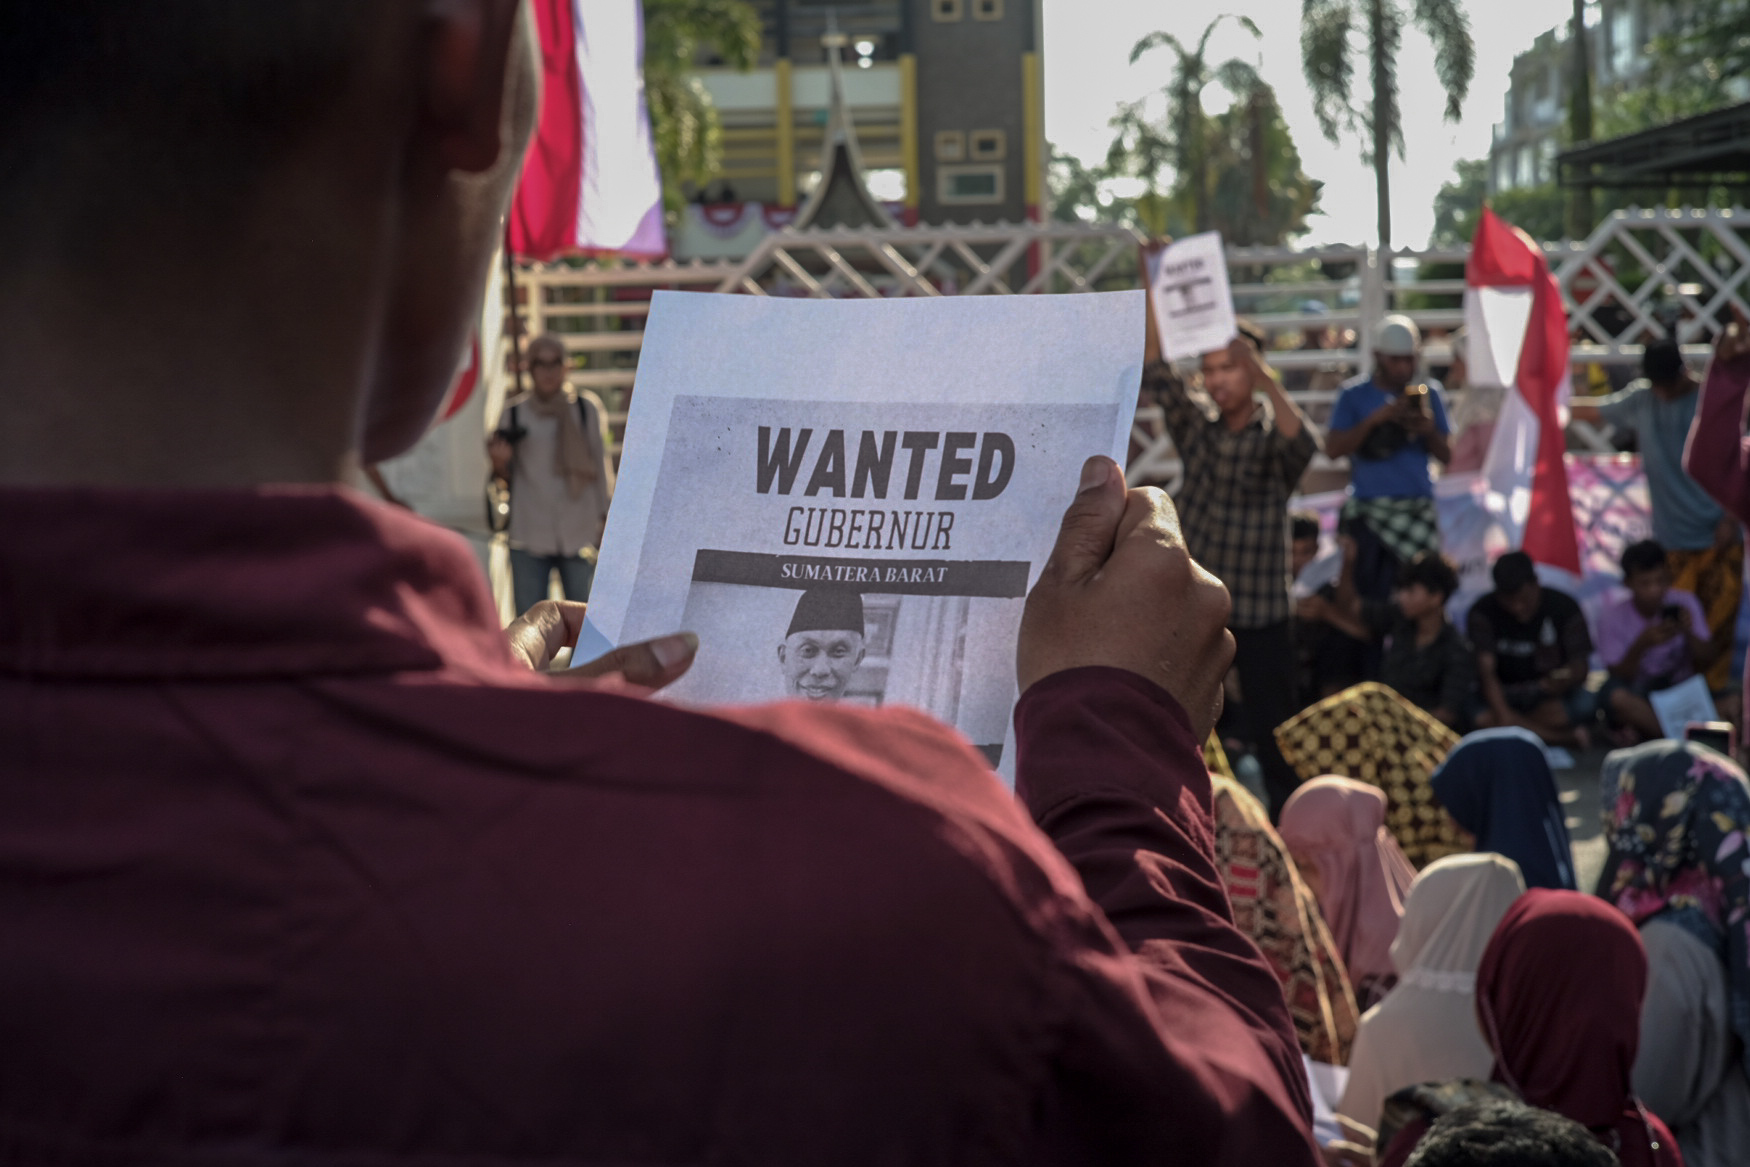 Selebaran Mencari Gubernur Sumatera Barat dalam Massa Aksi Warga Air Bangis 1-5 Agustus di Kota Padang. Foto oleh Uyung Hamdani.